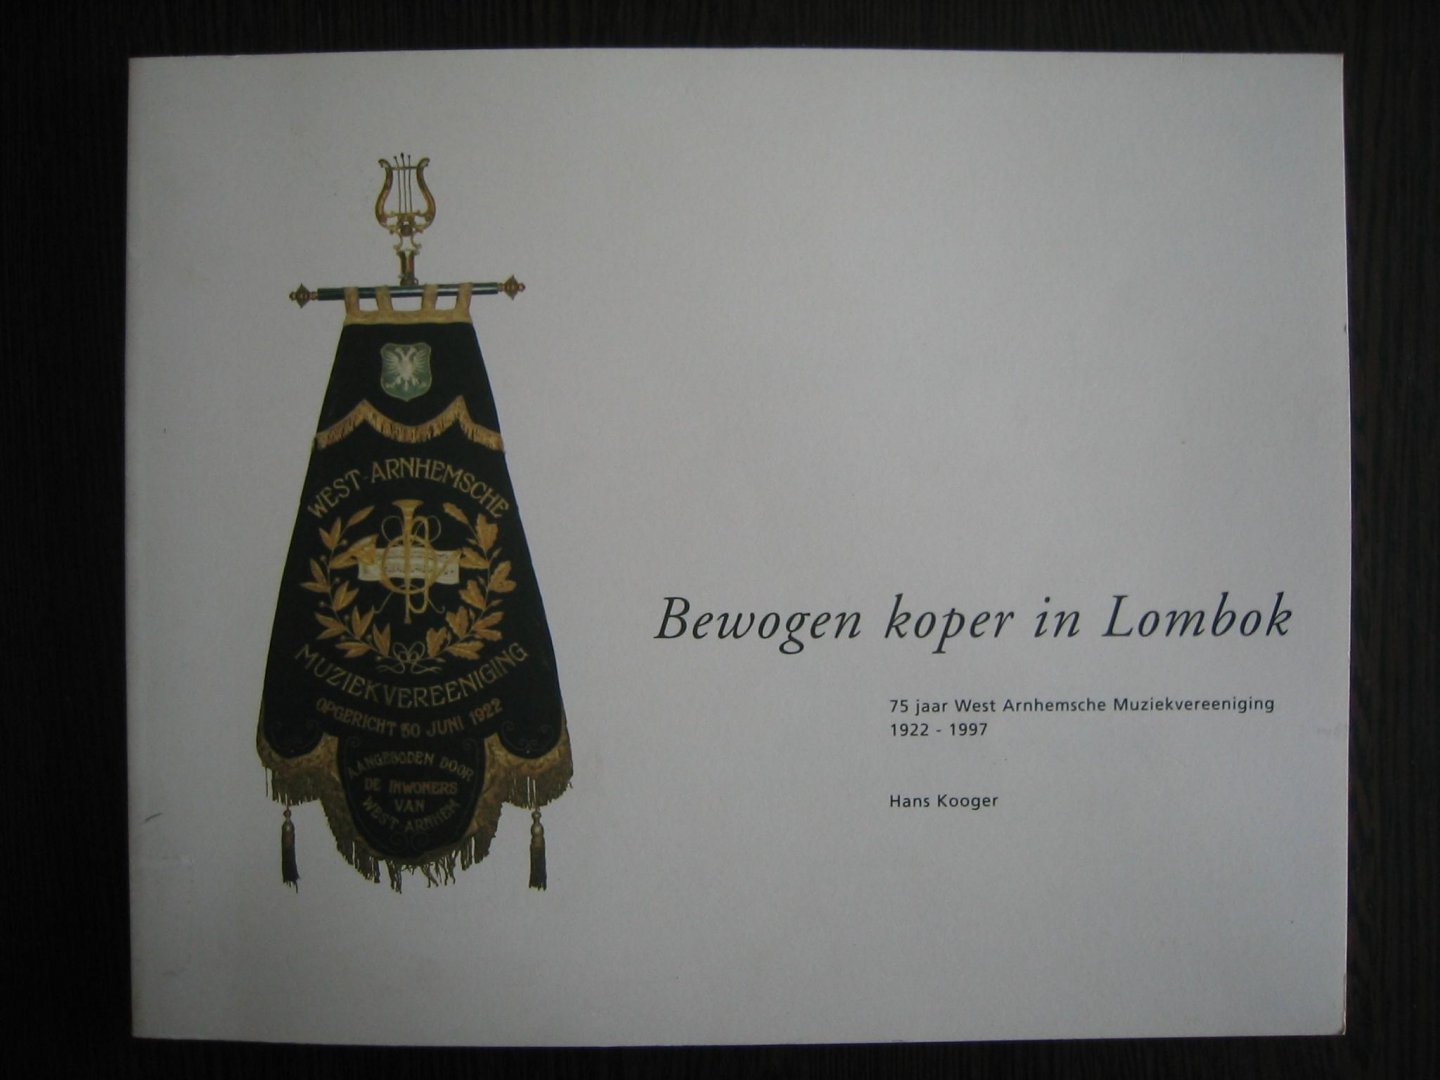 Kooger, Hans - Bewogen koper in Lombok. 75 jaar West Arnhemse Muziekvereeniging 1922-1997.